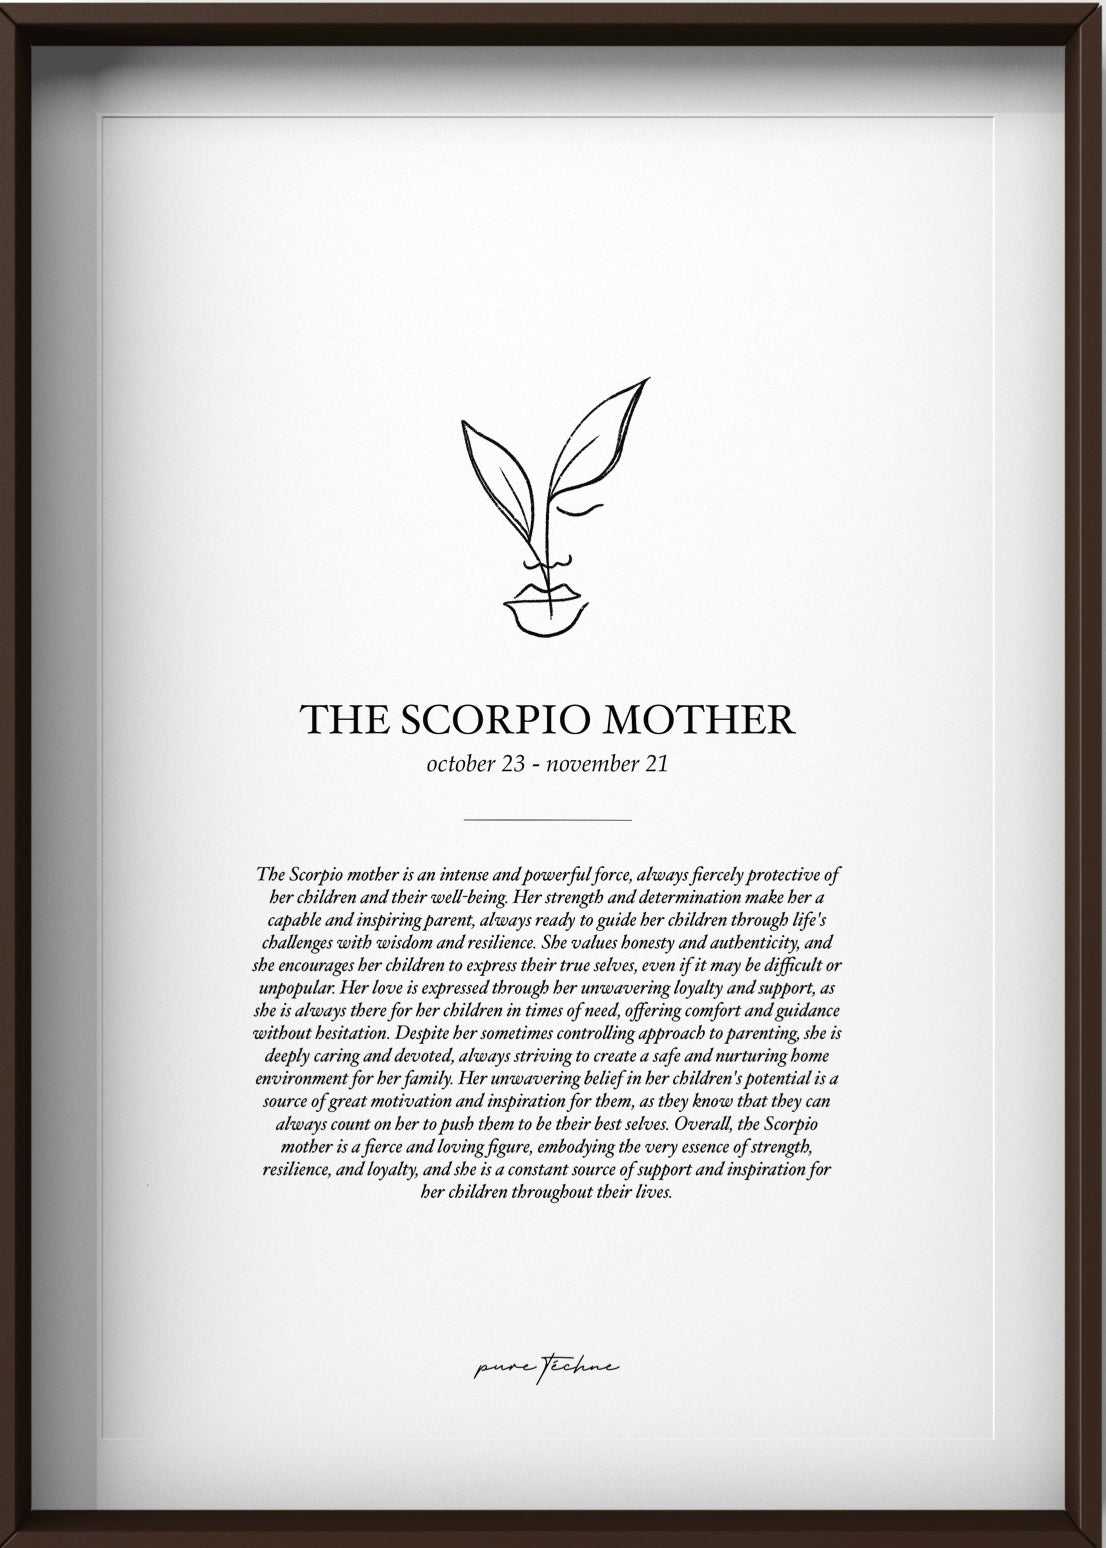 The Scorpio Mother